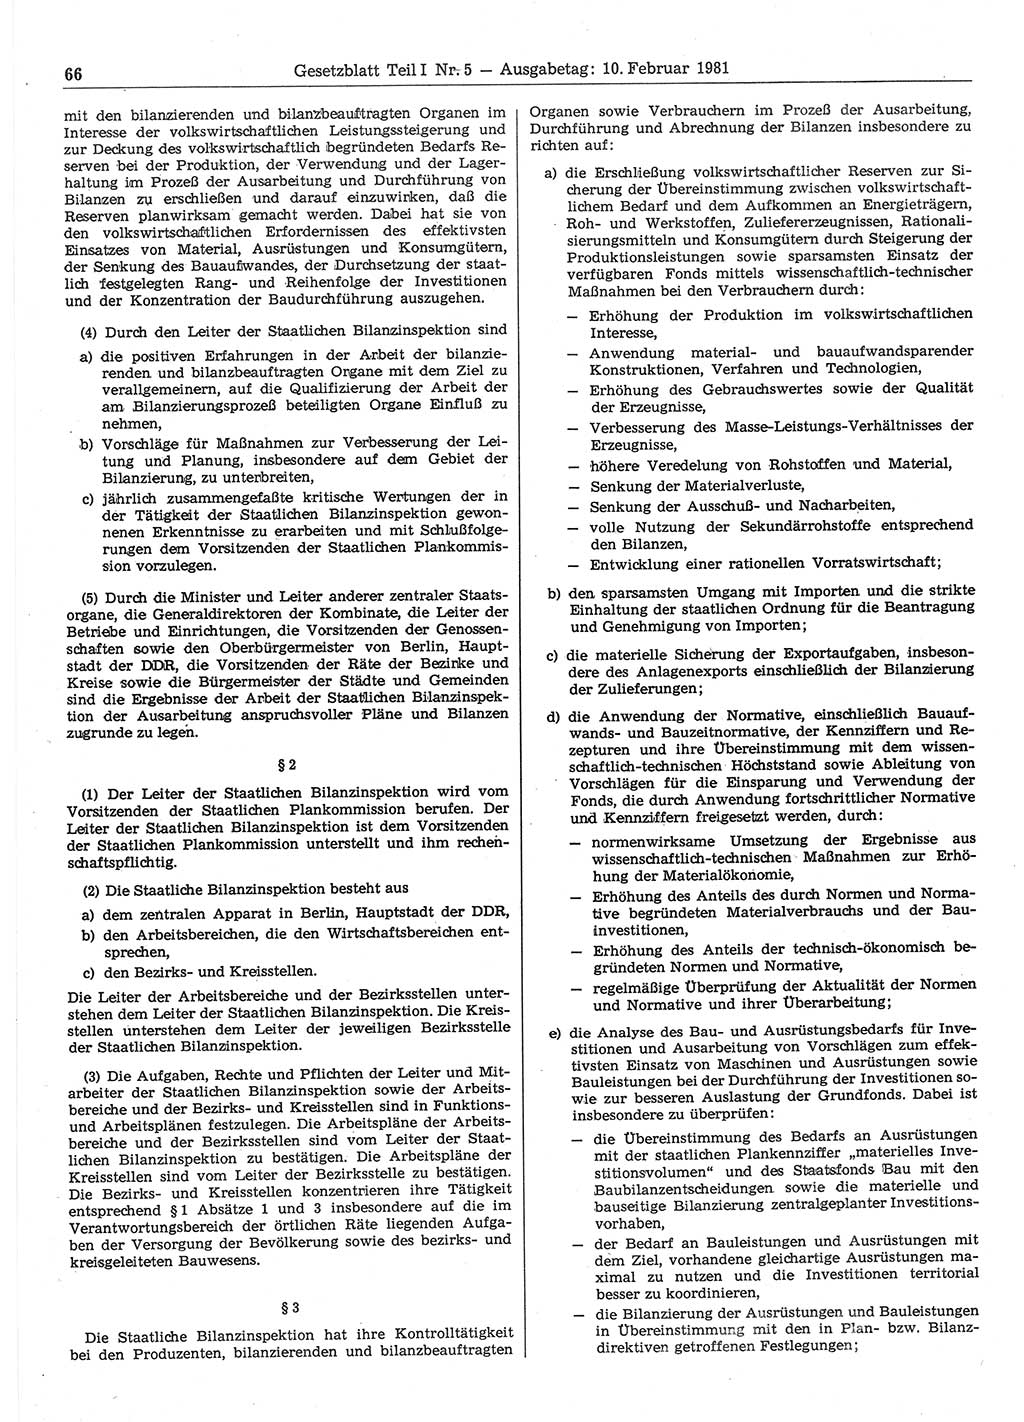 Gesetzblatt (GBl.) der Deutschen Demokratischen Republik (DDR) Teil Ⅰ 1981, Seite 66 (GBl. DDR Ⅰ 1981, S. 66)